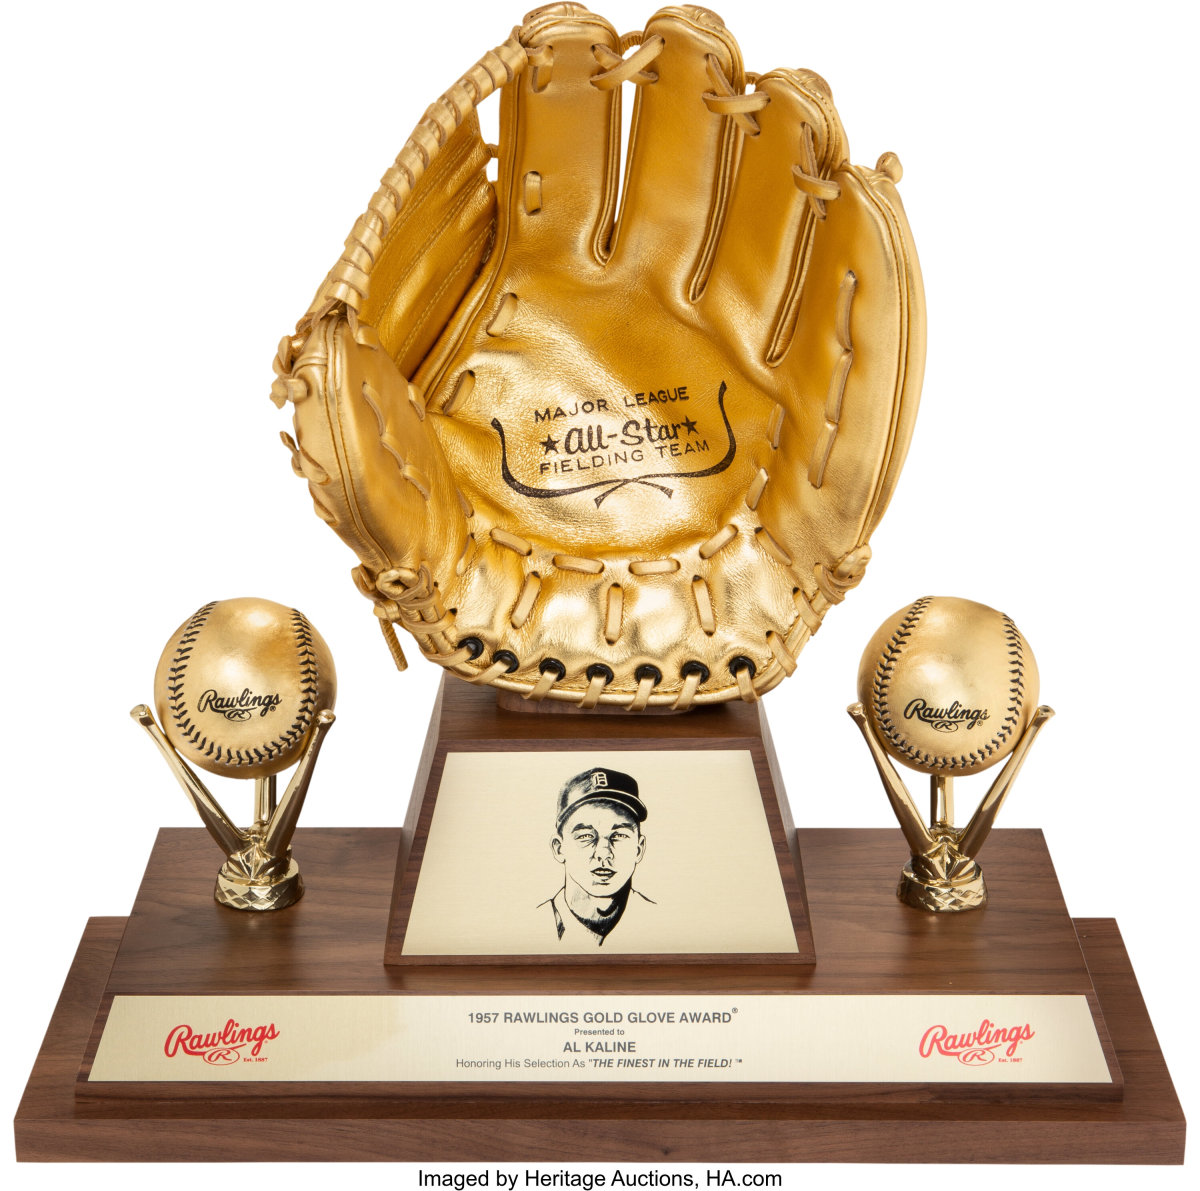 Al Kaline's 1957 Gold Glove Award.